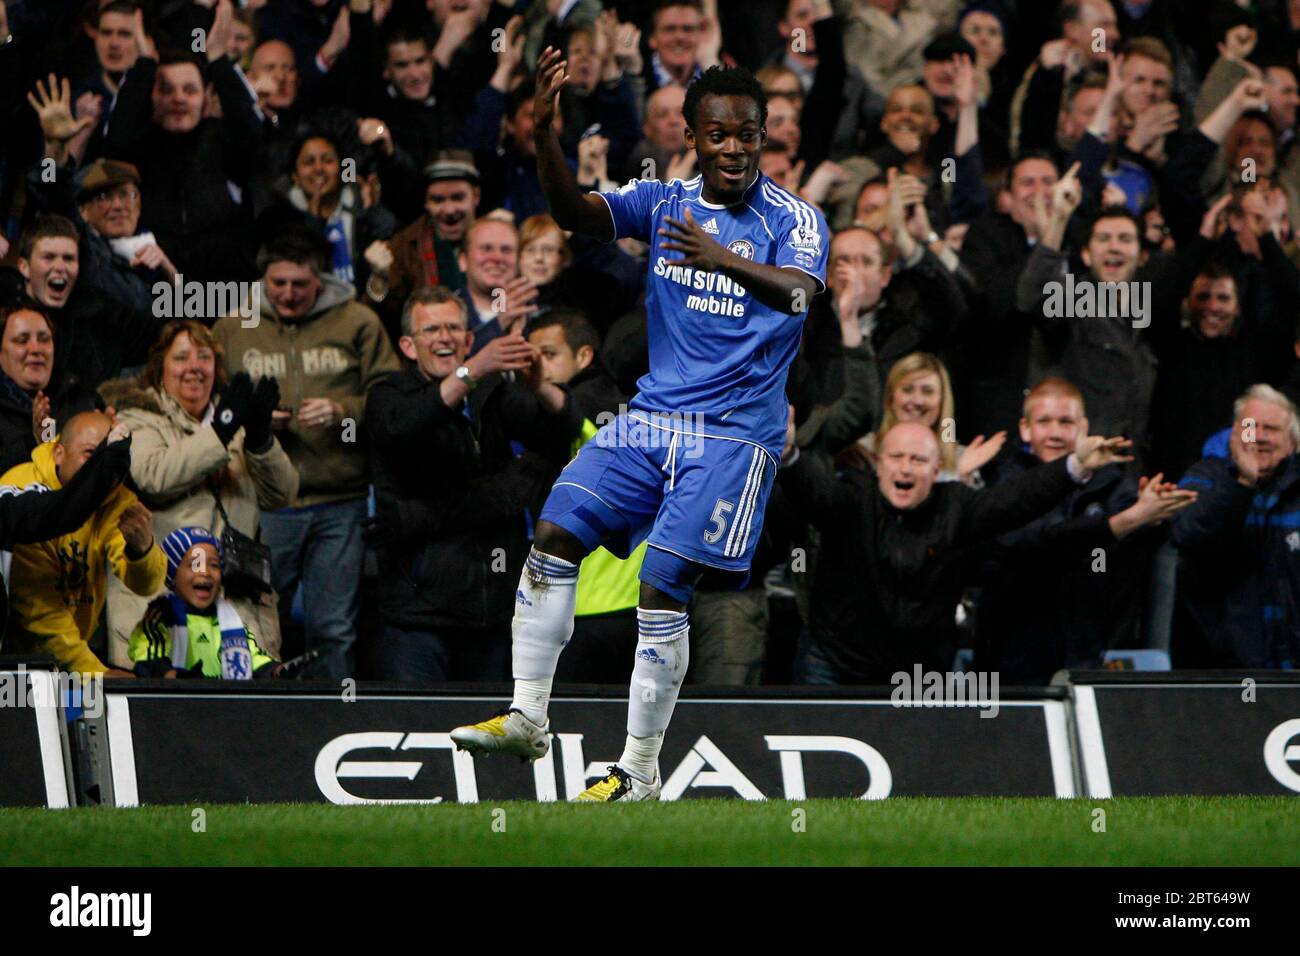 LONDRES, Royaume-Uni AVRIL 14 : Michael Essien de Chelsea marque le but d'ouverture de Chelsea et célèbre lors de la Premiership League entre Chelsea et Wigan Athleti Banque D'Images